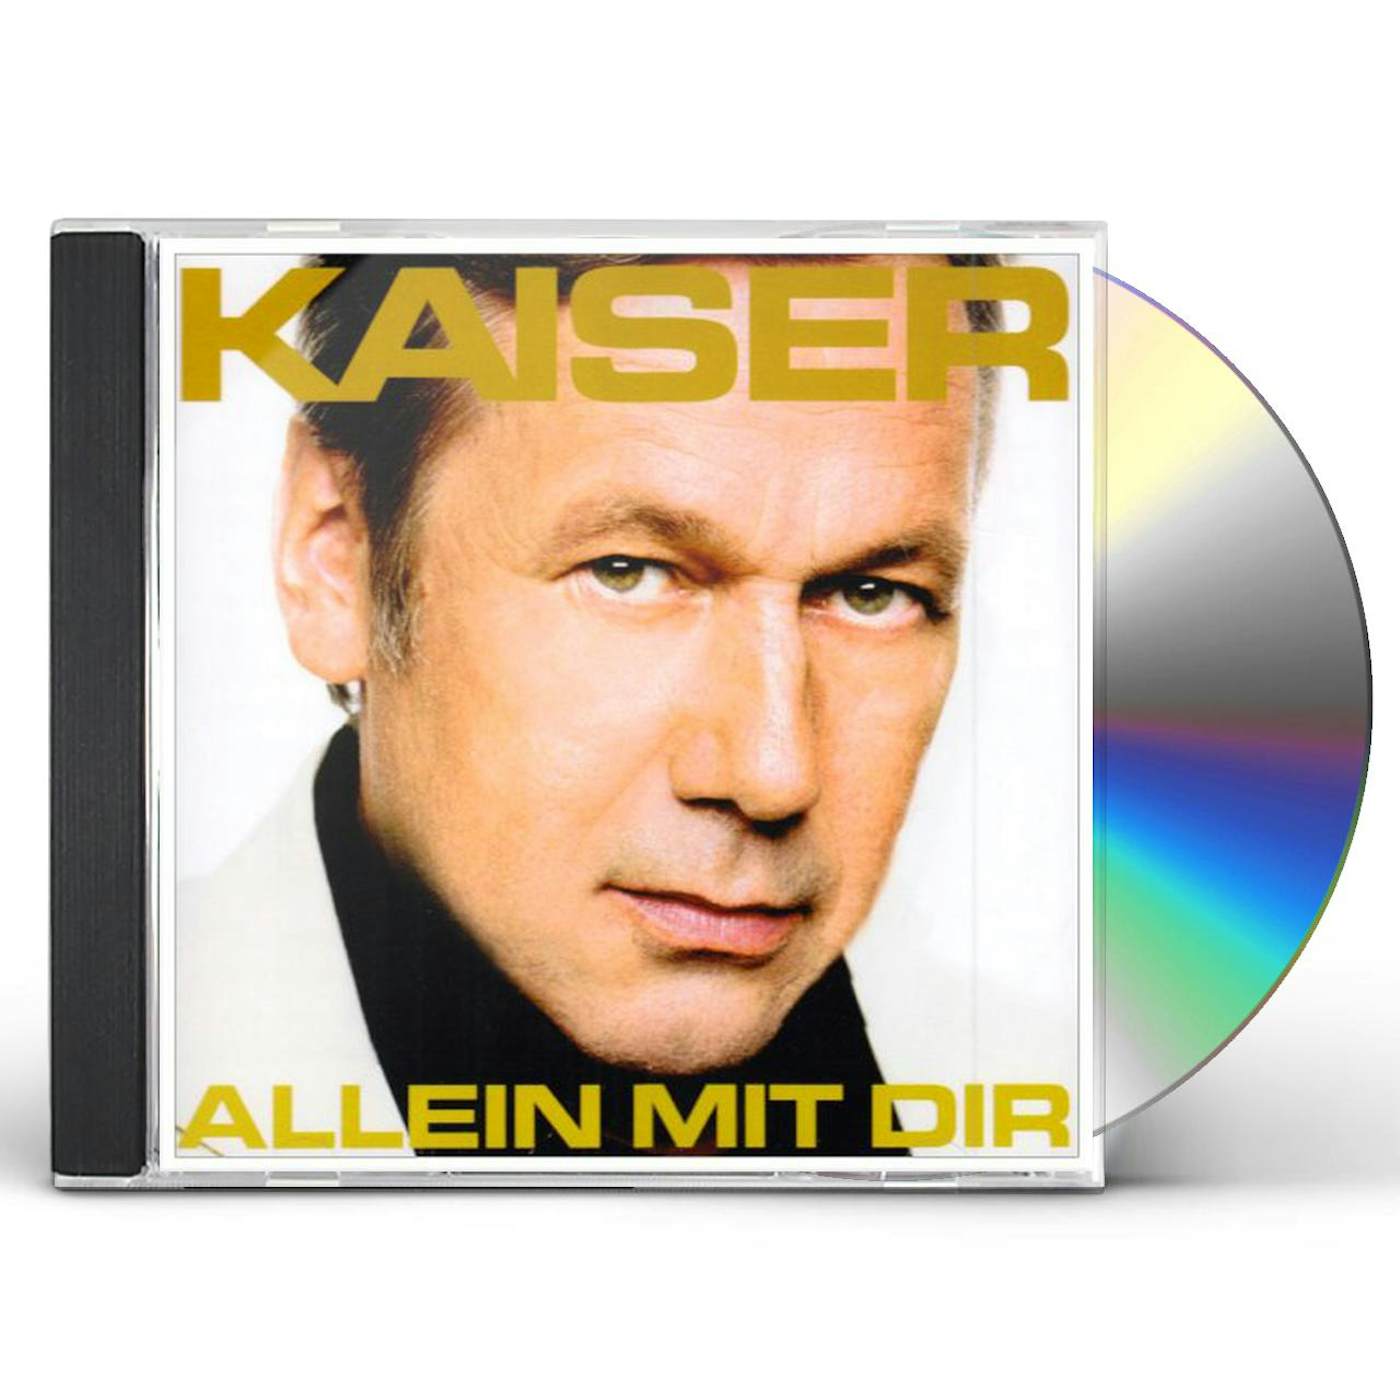 Roland Kaiser ALLEIN MIT DIR CD